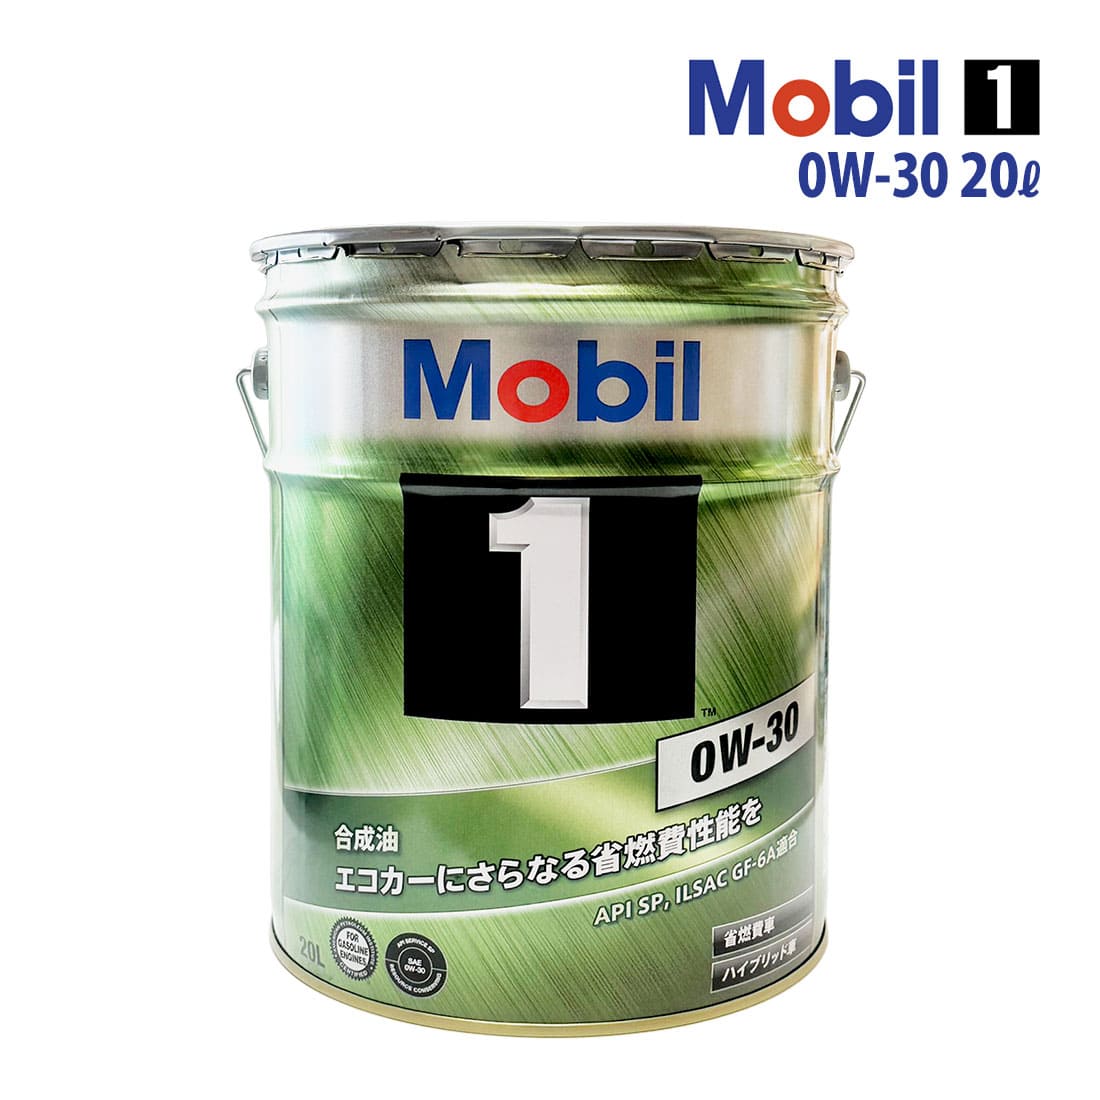 エンジンオイル 0W-30 SP モービル1 Mobil1 20L缶 (20リットル) ペール缶  :ys-mob1010149-2305-10011:オートサポートグループ 通販 